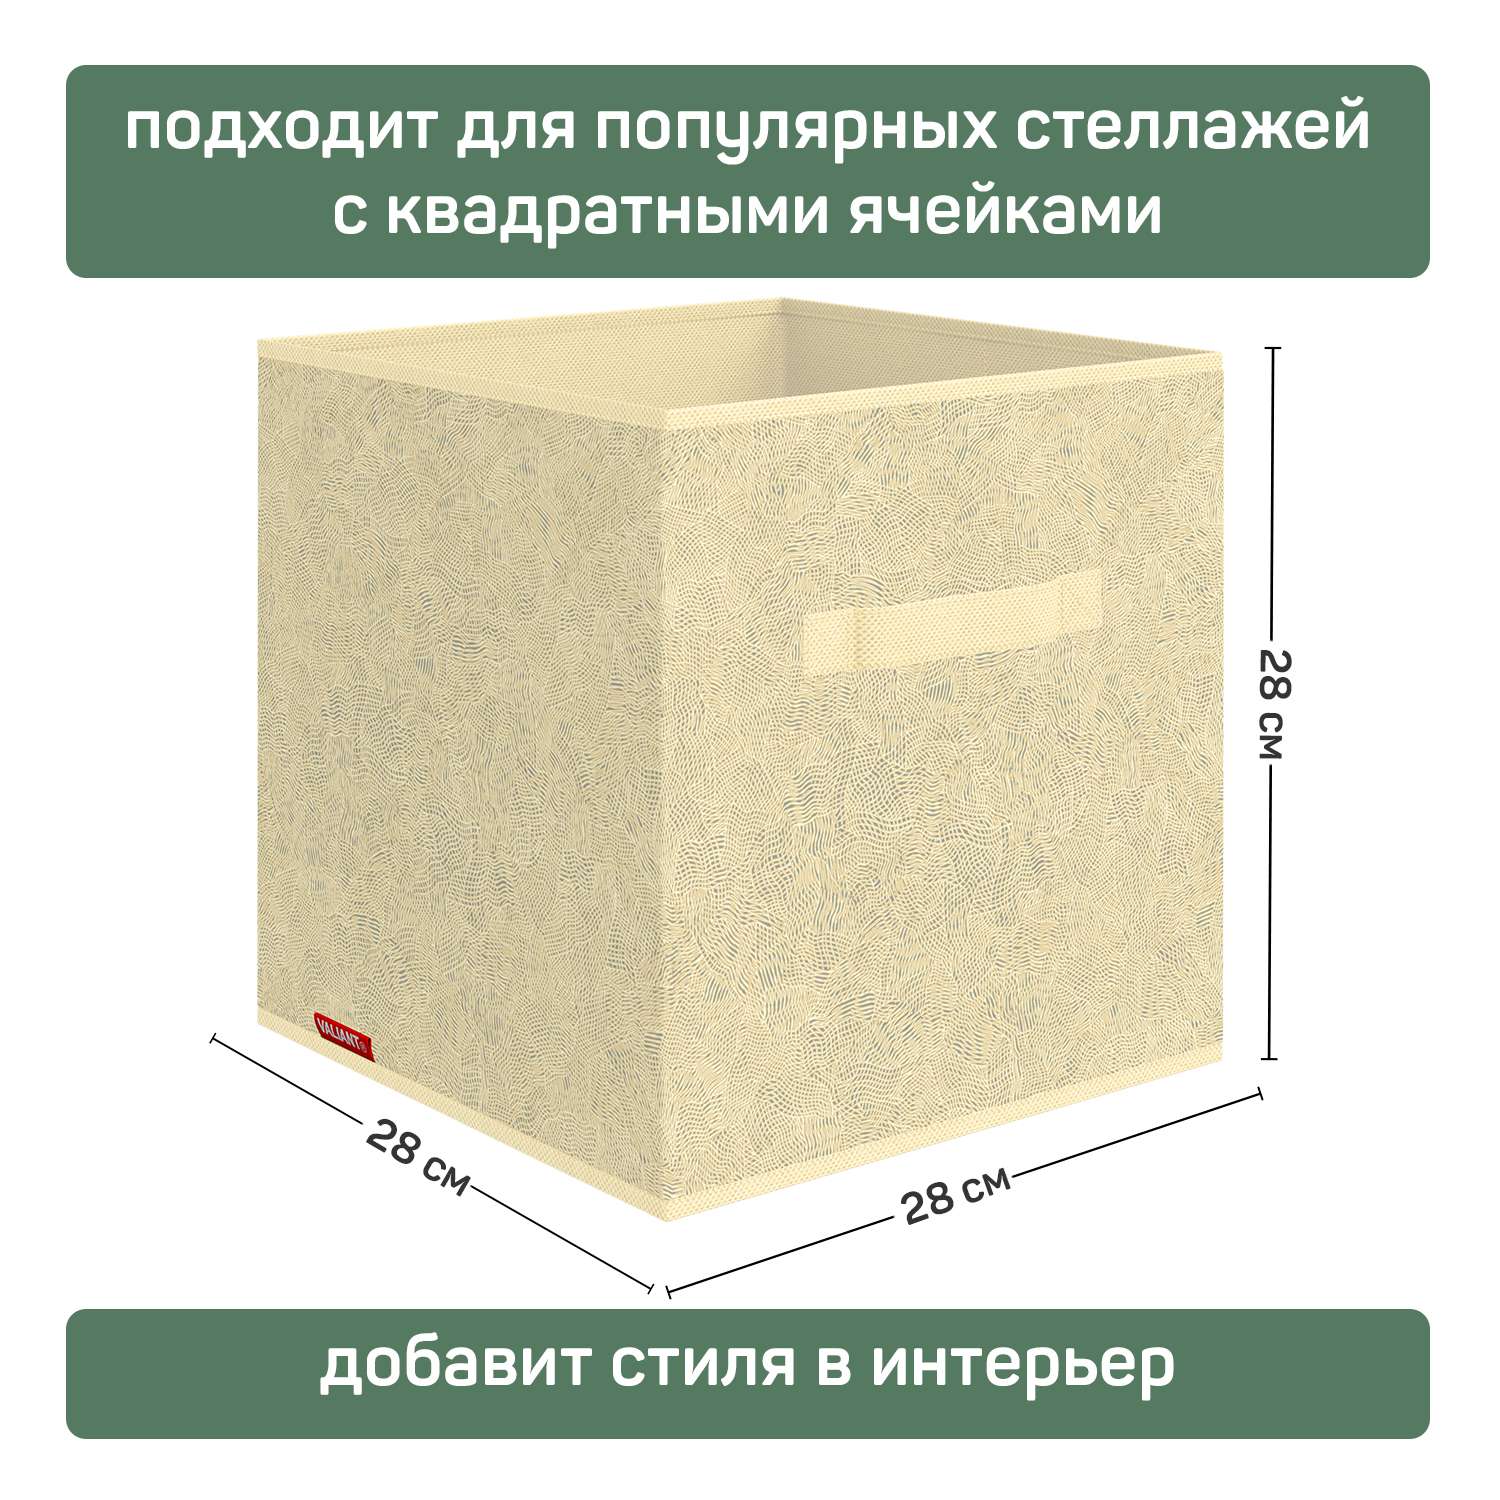 Короб стеллажный VALIANT 28*28*28 см набор 3 шт - фото 2